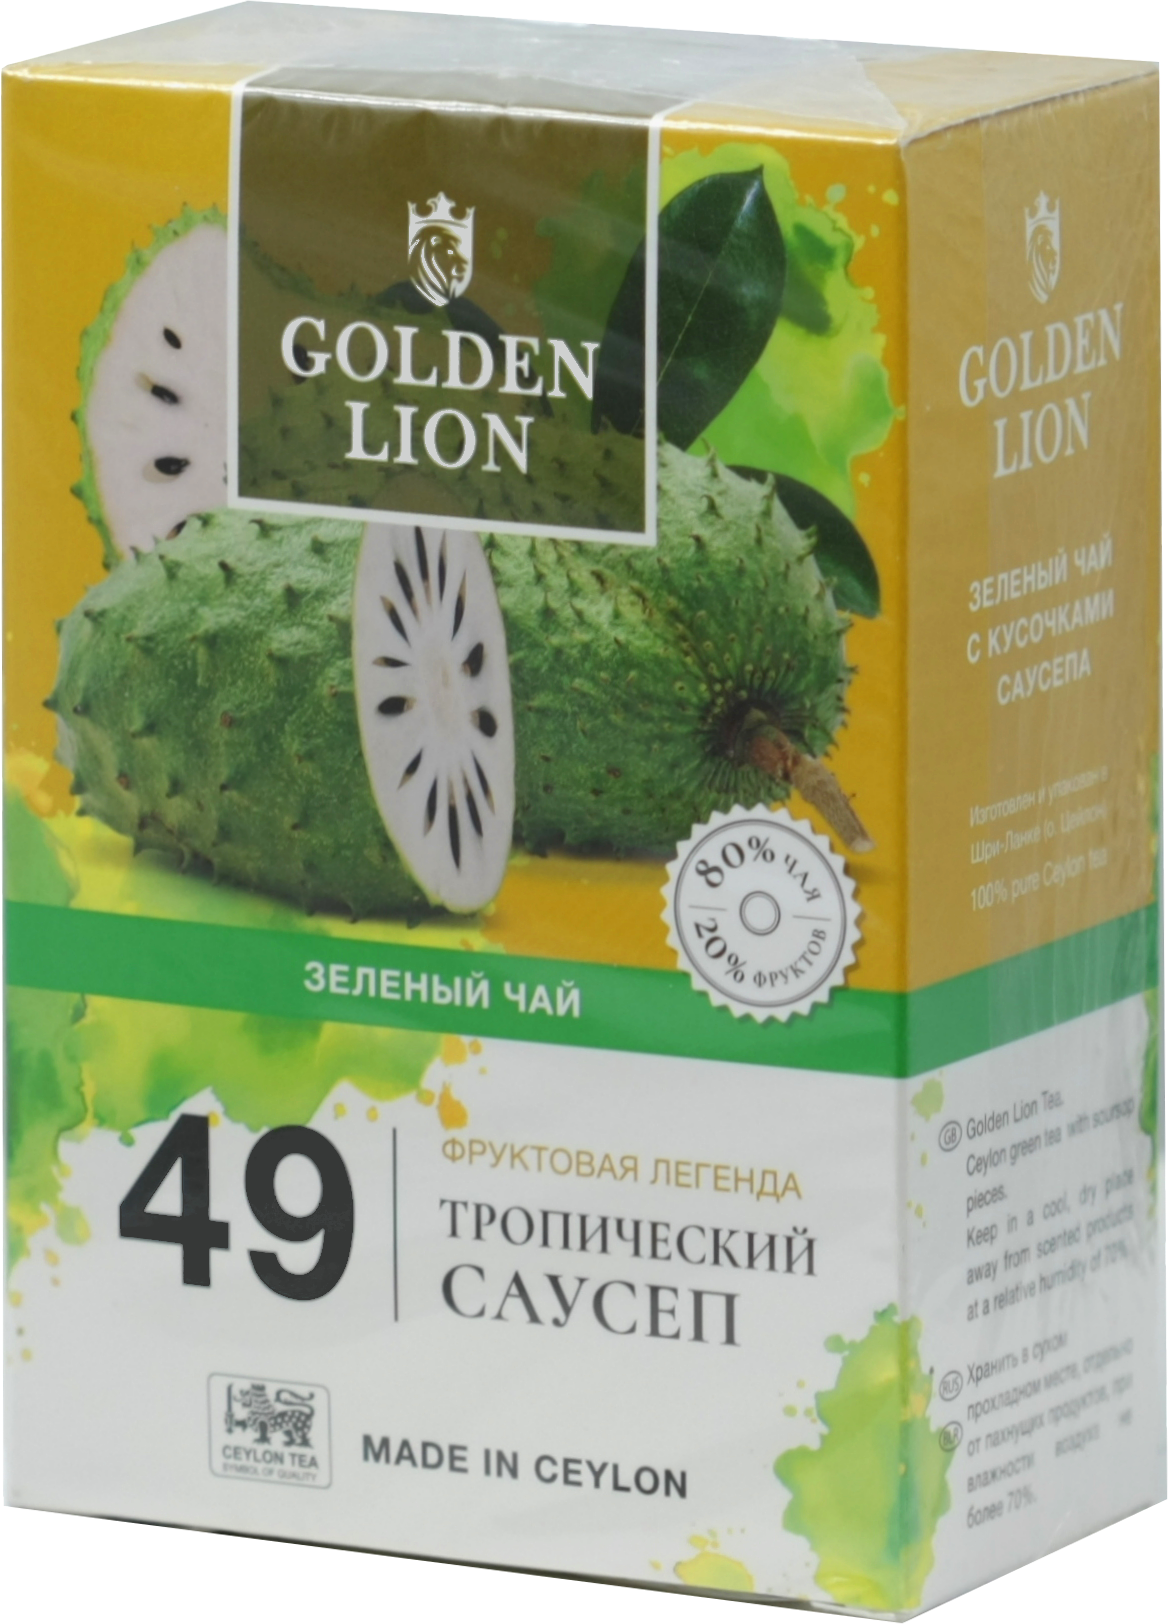 GOLDEN LION. Fruits legend. Tropical soursop (зеленый) 90 гр. карт.пачка